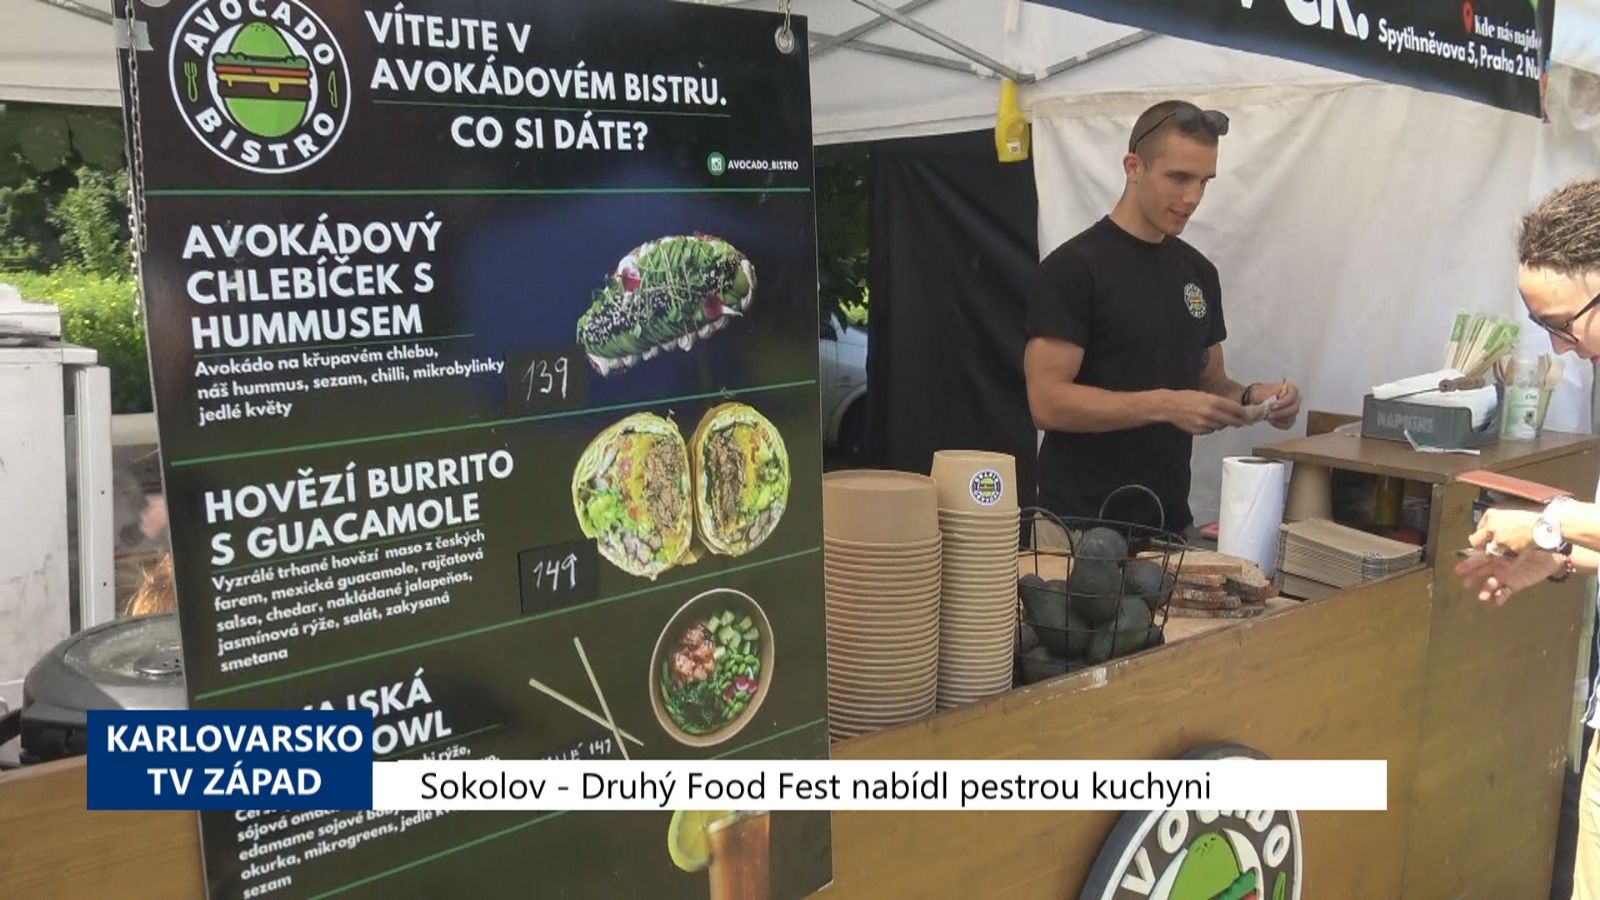 Sokolov: Druhý Food fest nabídl pestrou kuchyni (TV Západ)